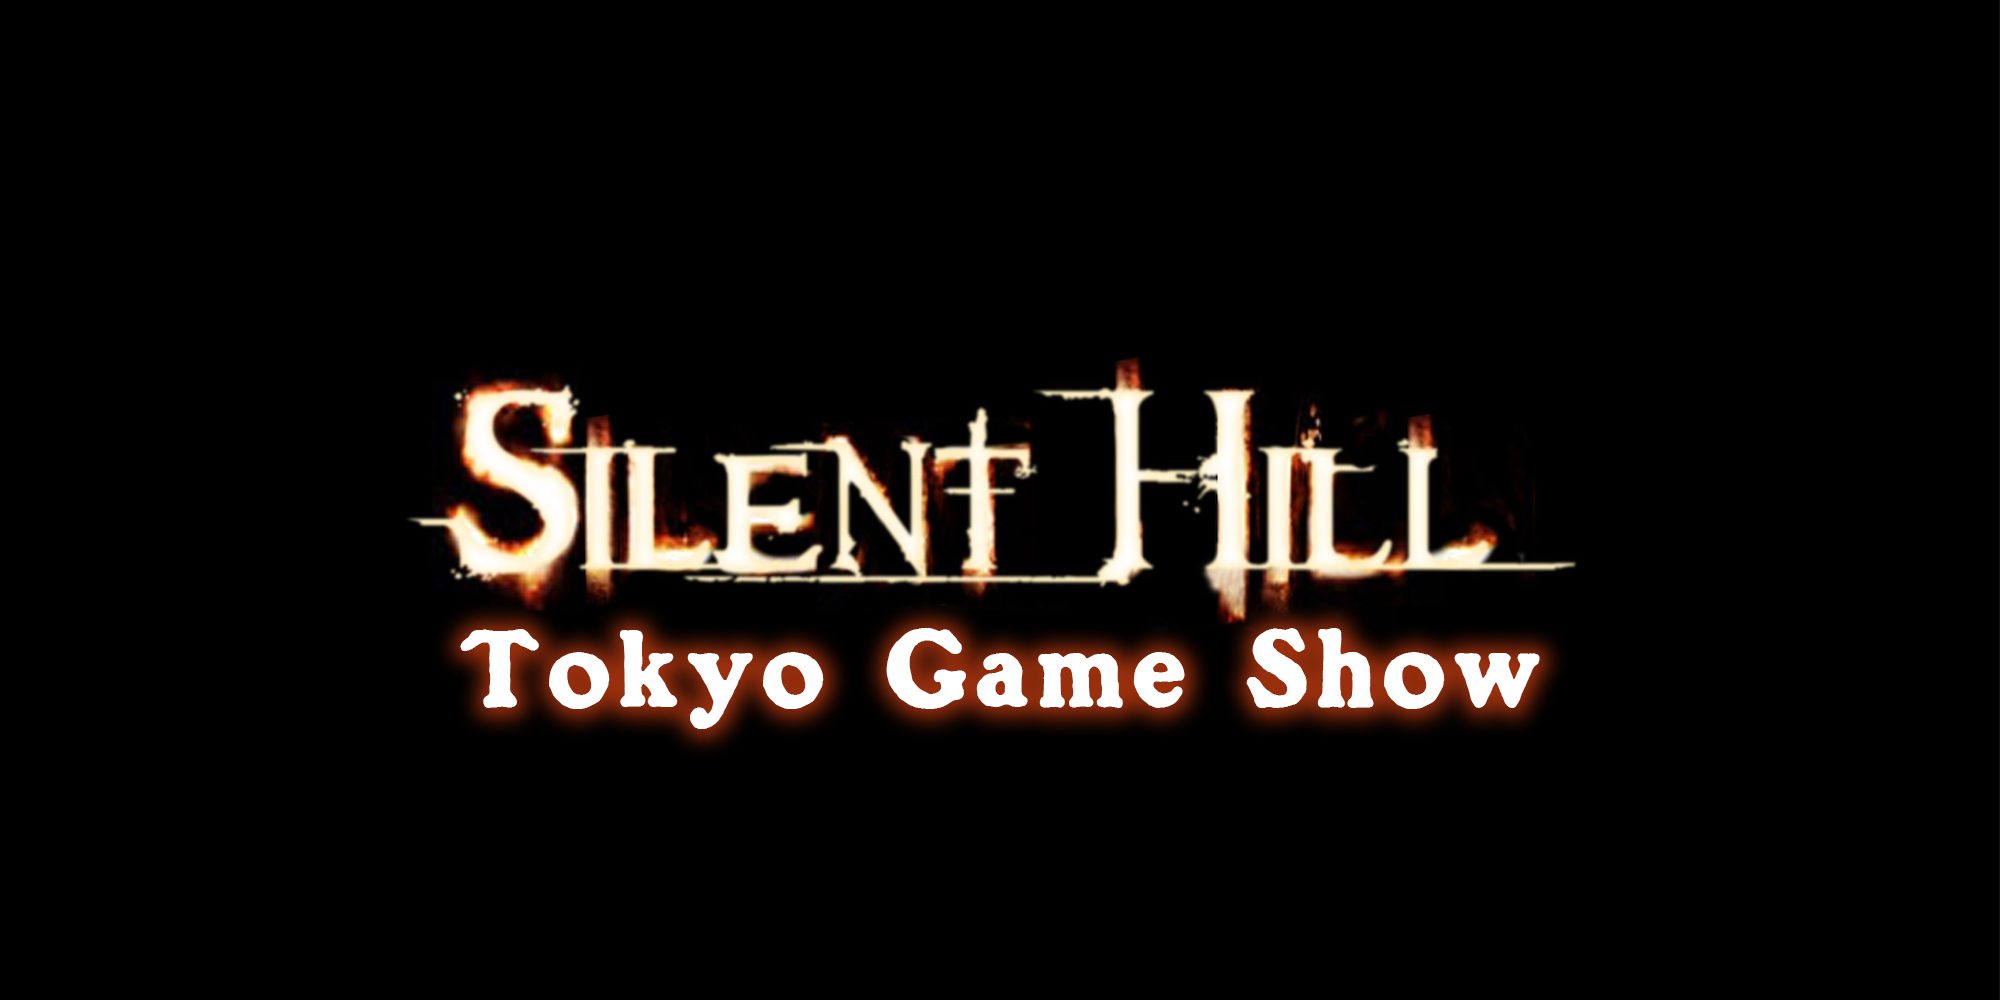 منتظر معرفی نسخه جدید بازی Silent Hill در Tokyo Game Show باشید؟